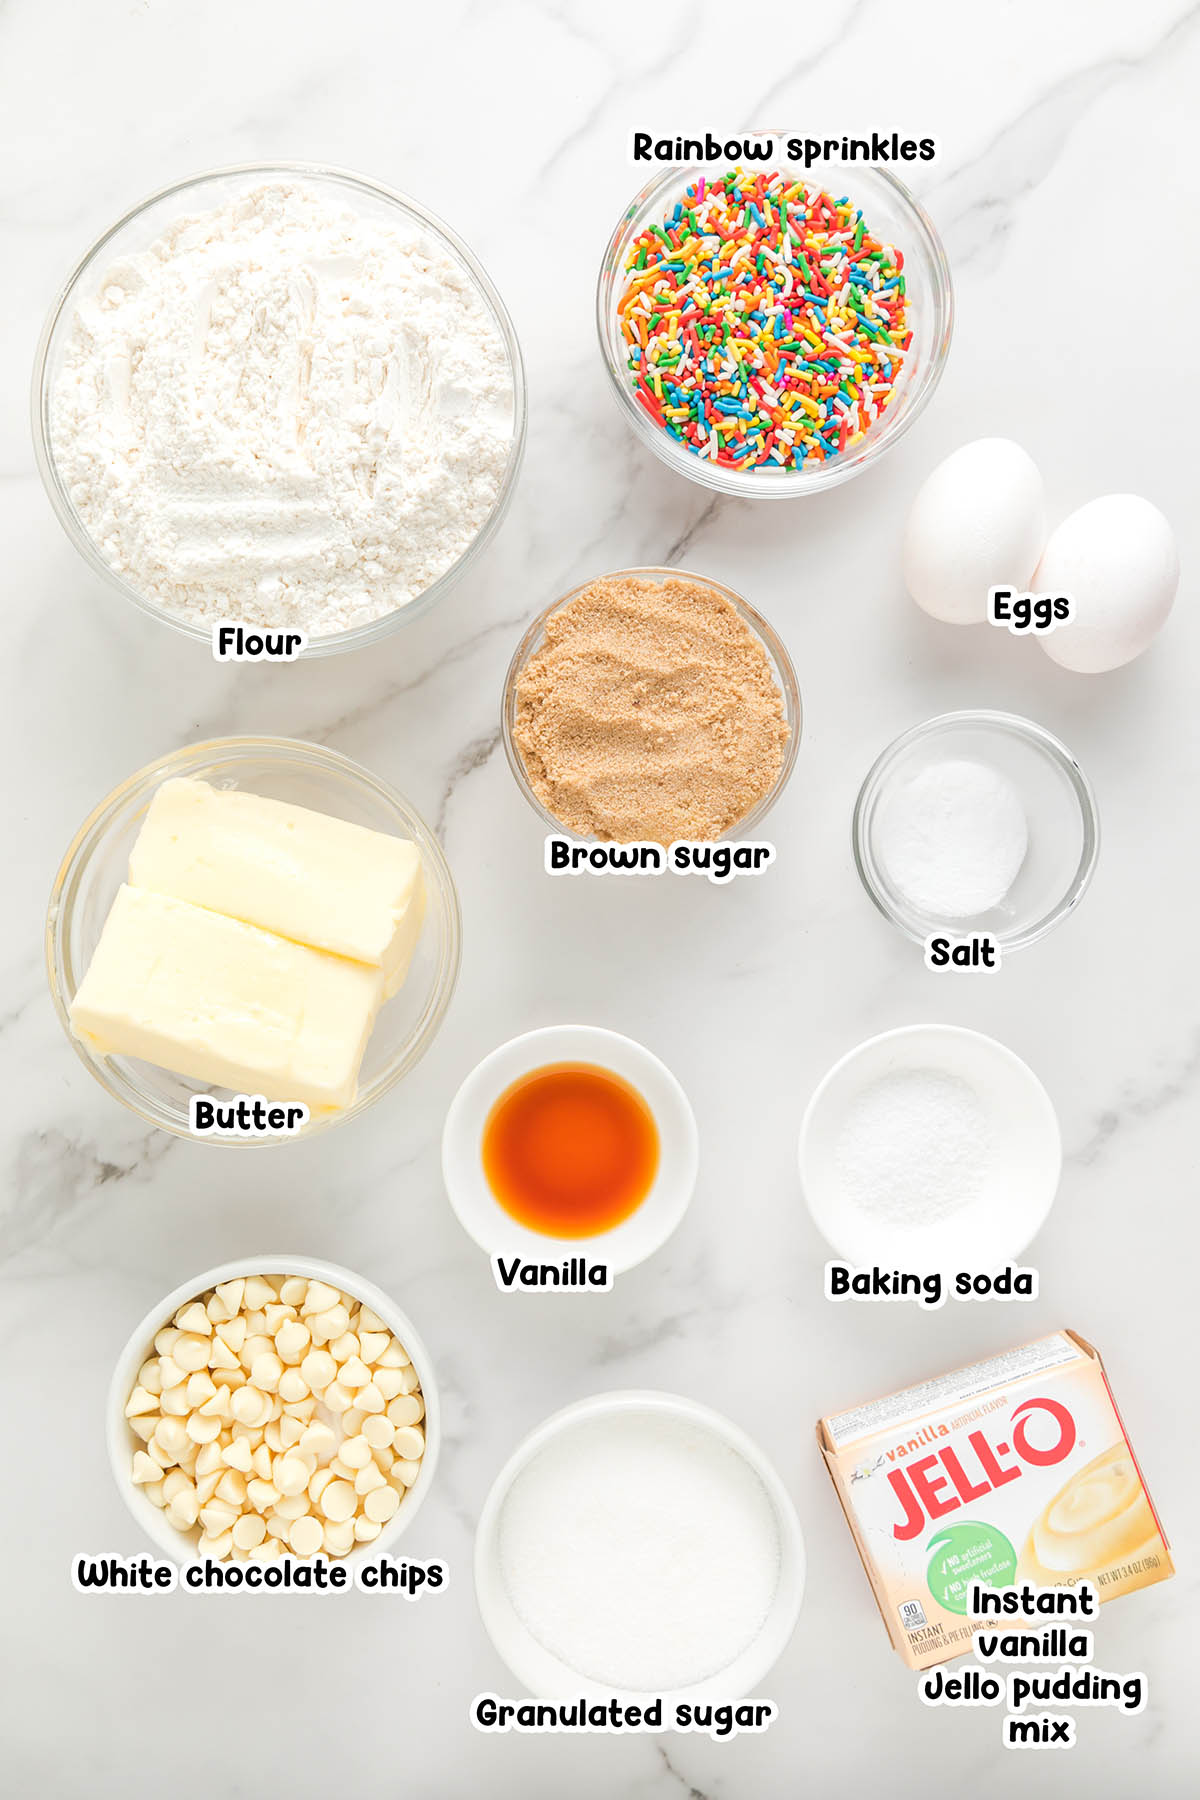 Birthday Jello Pudding Cookies ingredients.